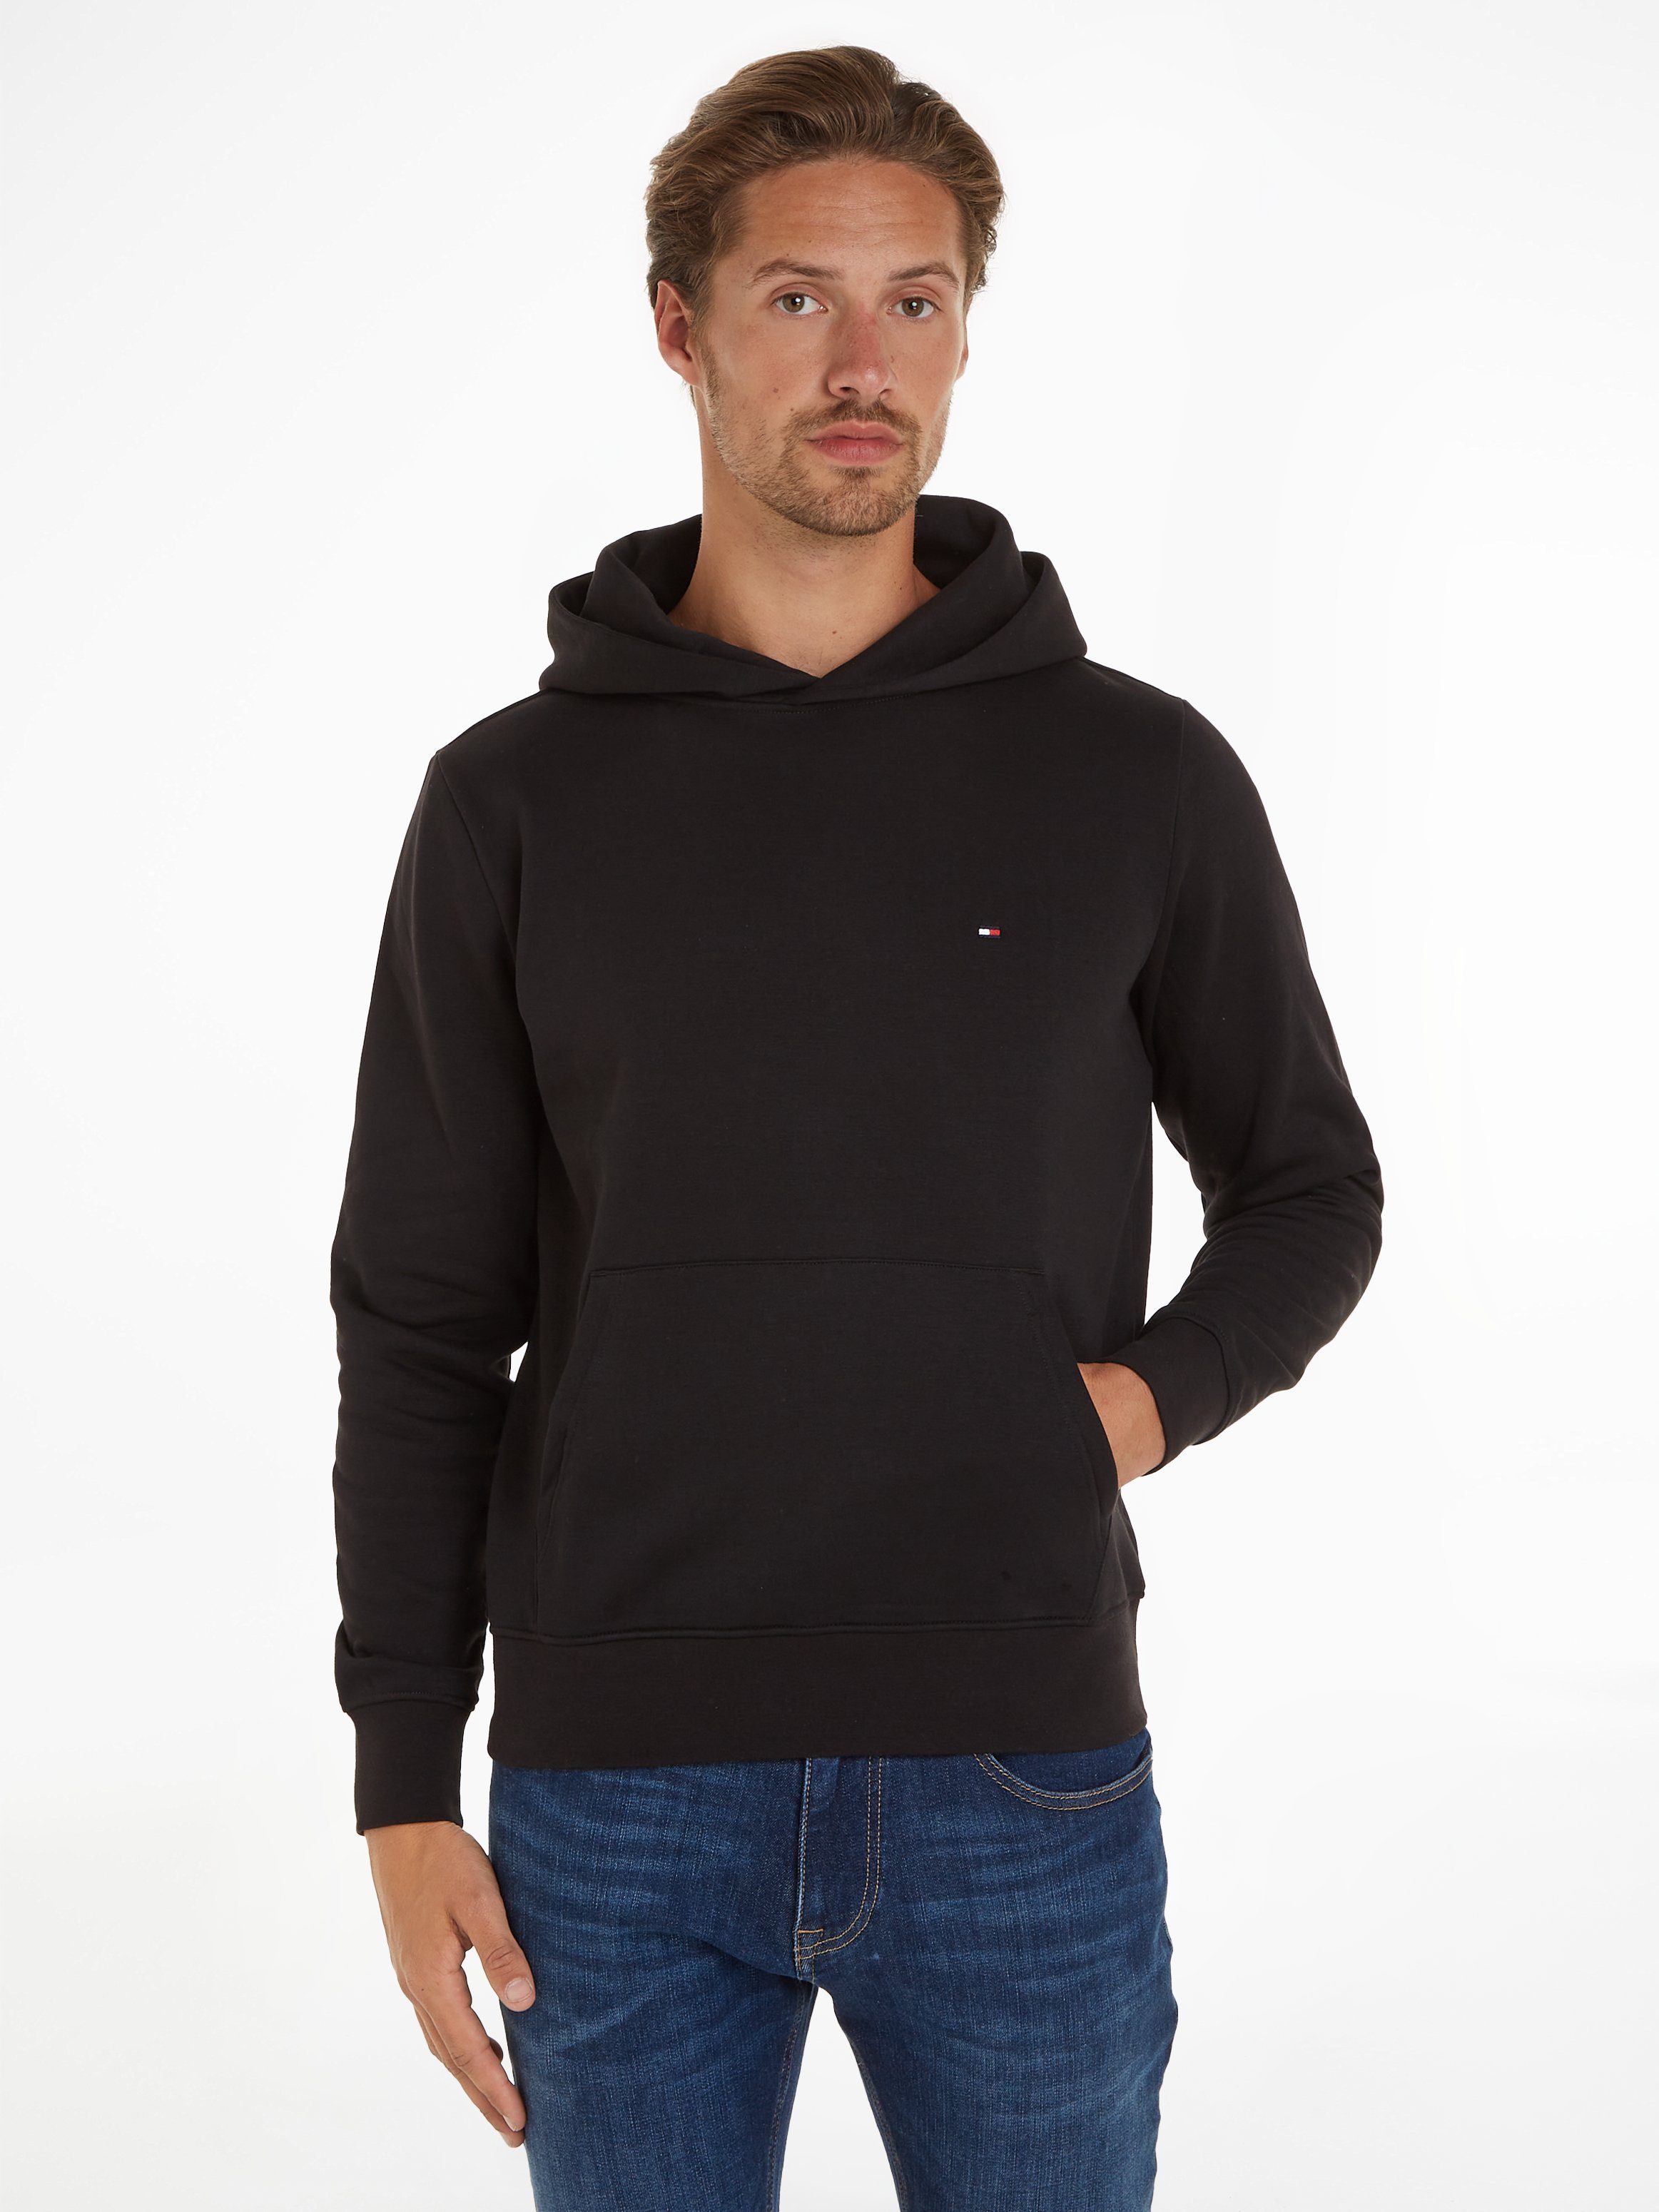 kaufen online Sweatshirts Herren | OTTO